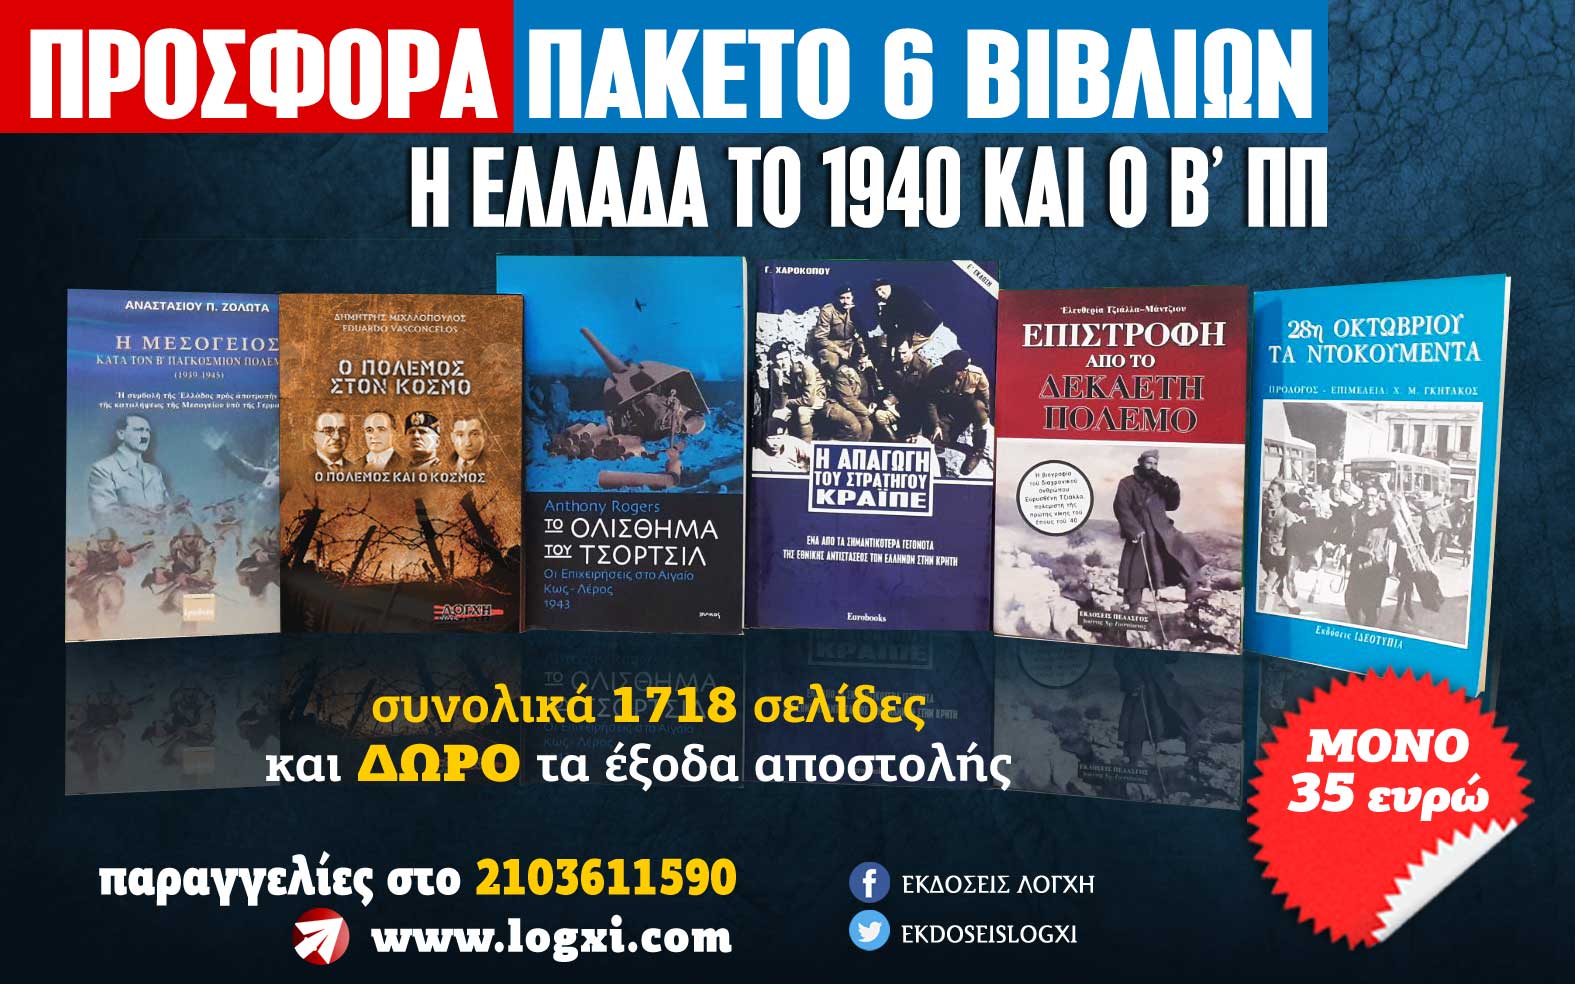 Προσφορά για την 28η Οκτωβρίου, 6 βιβλία 35 ευρώ